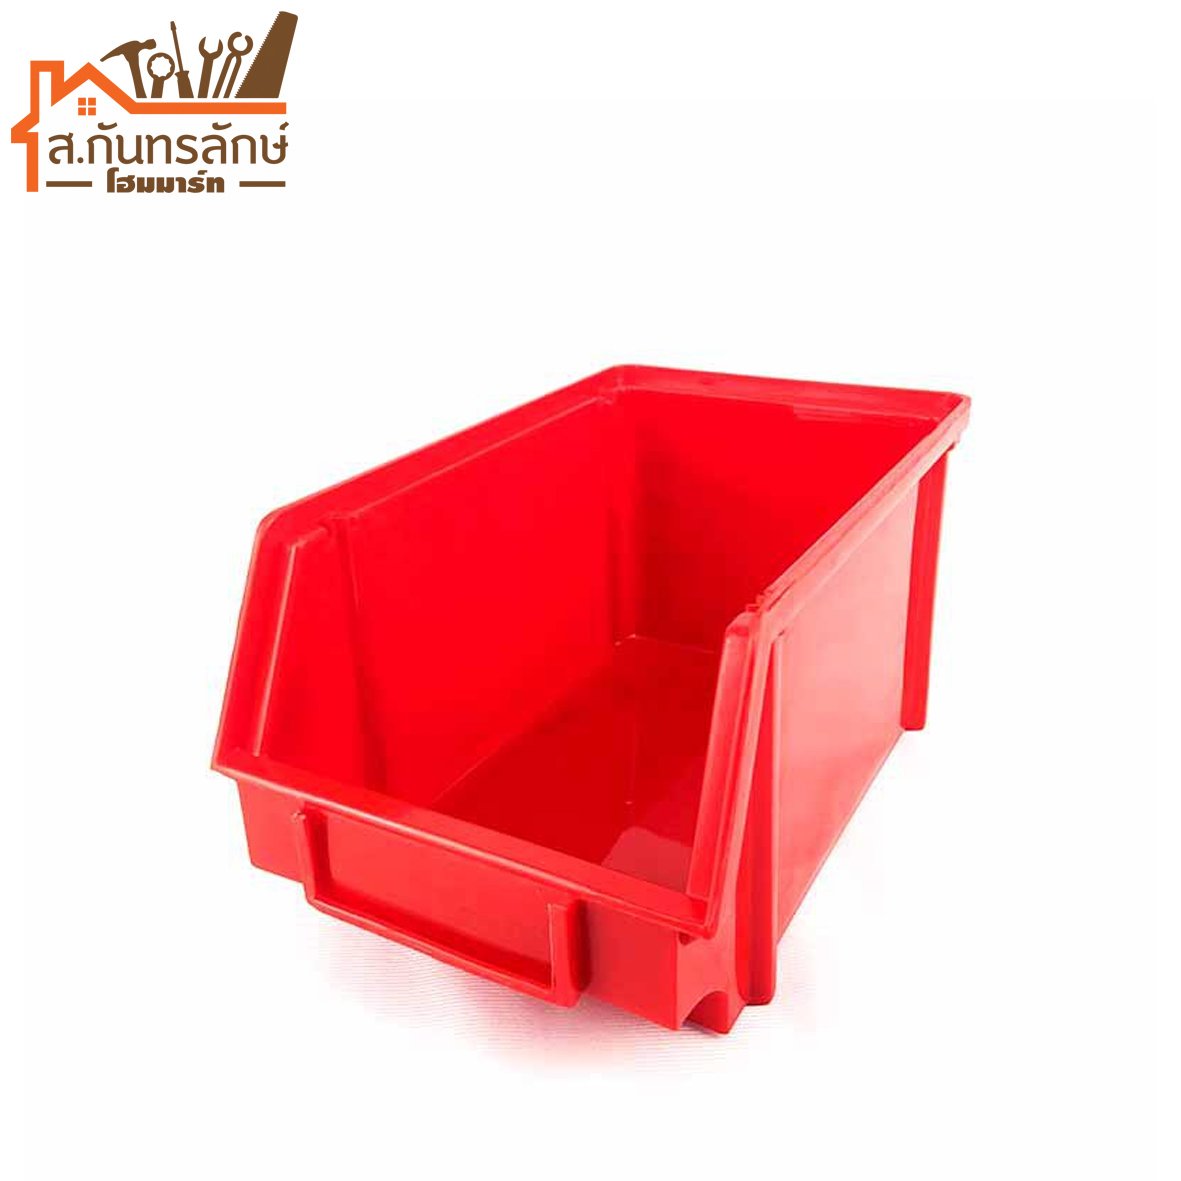 กล่องพลาสติก 15x23x12 CM. สีแดง